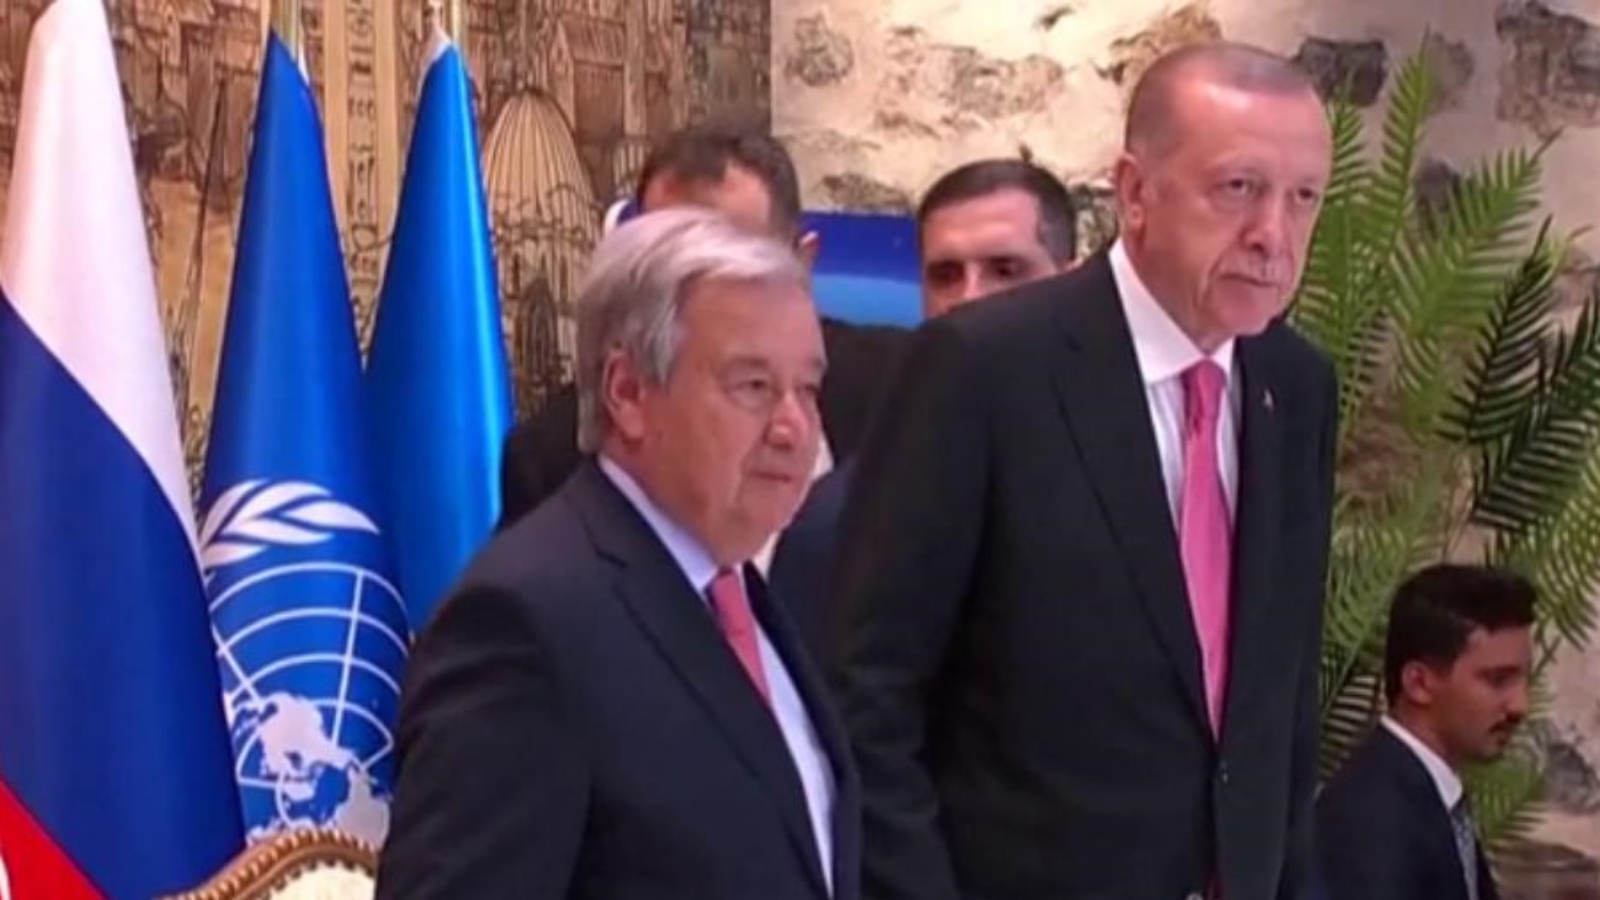 الأمين العام للأمم المتحدة أنتونيو غوتيريش والرئيس التركي رجب طيب إردوغان في اسطنبول